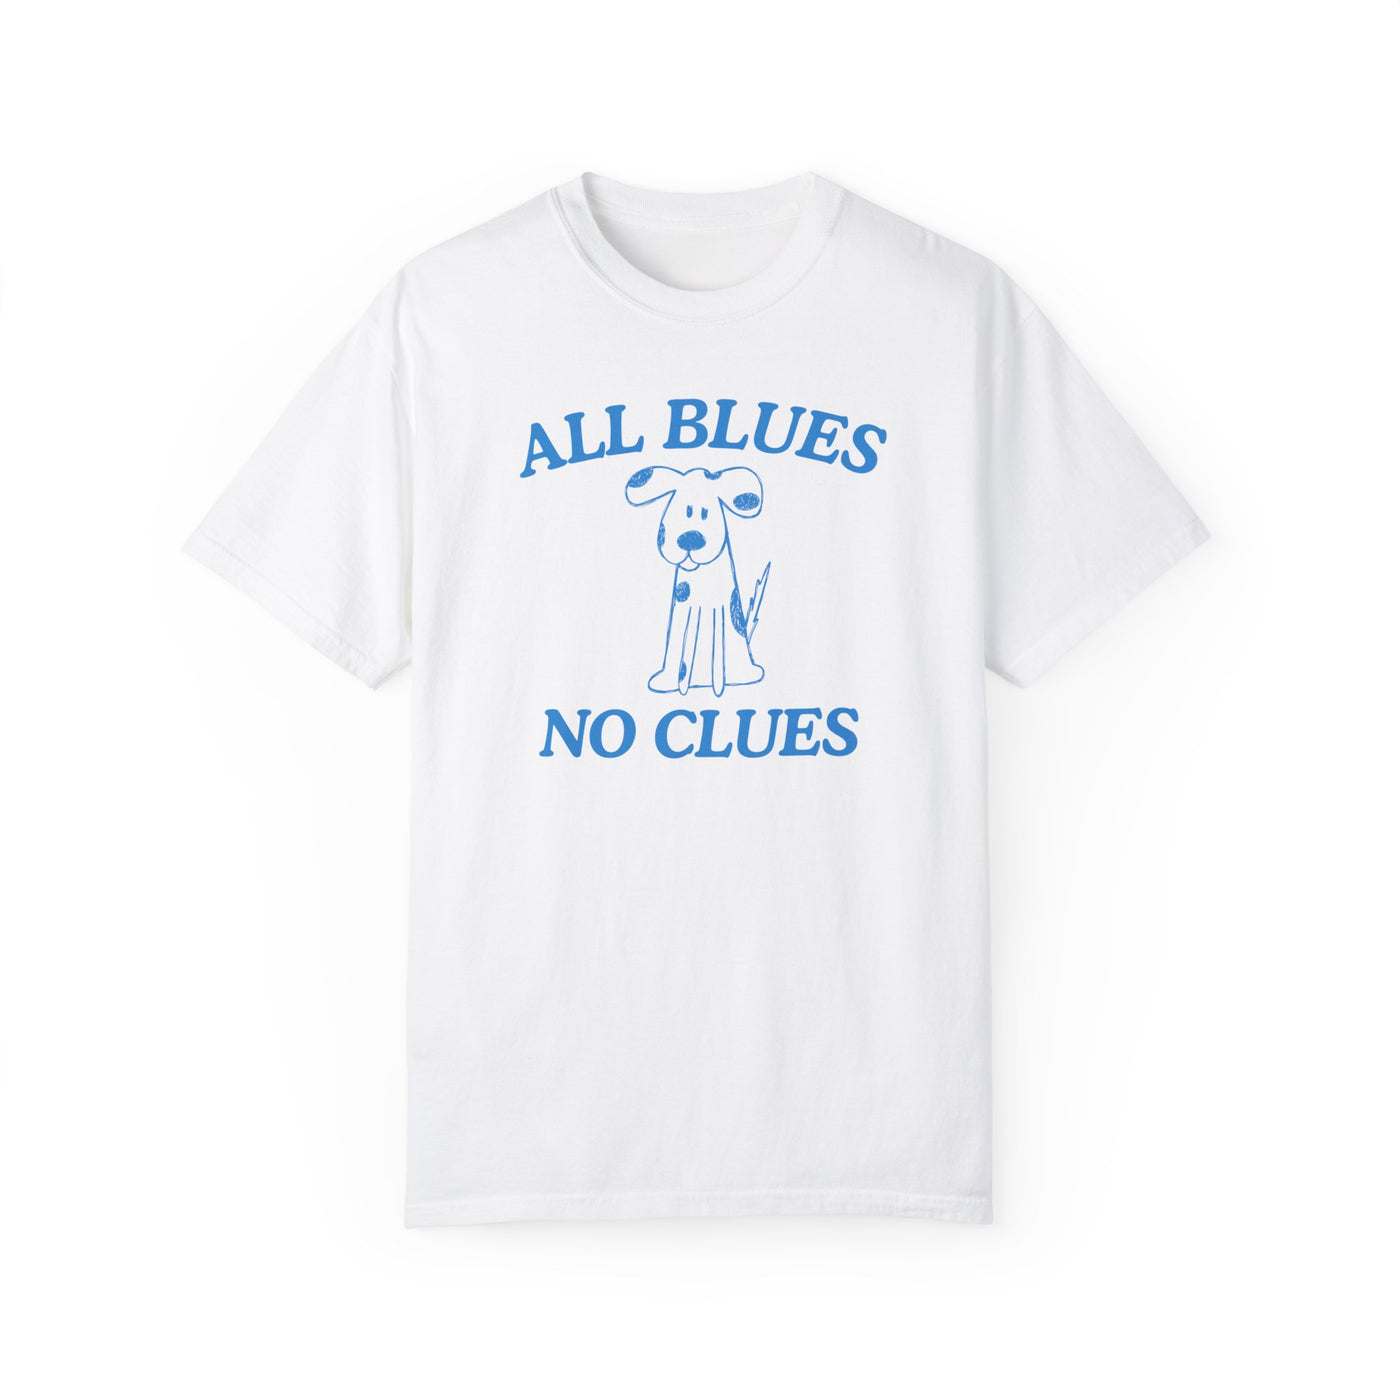 All Blues No Clues- Comfort Colors